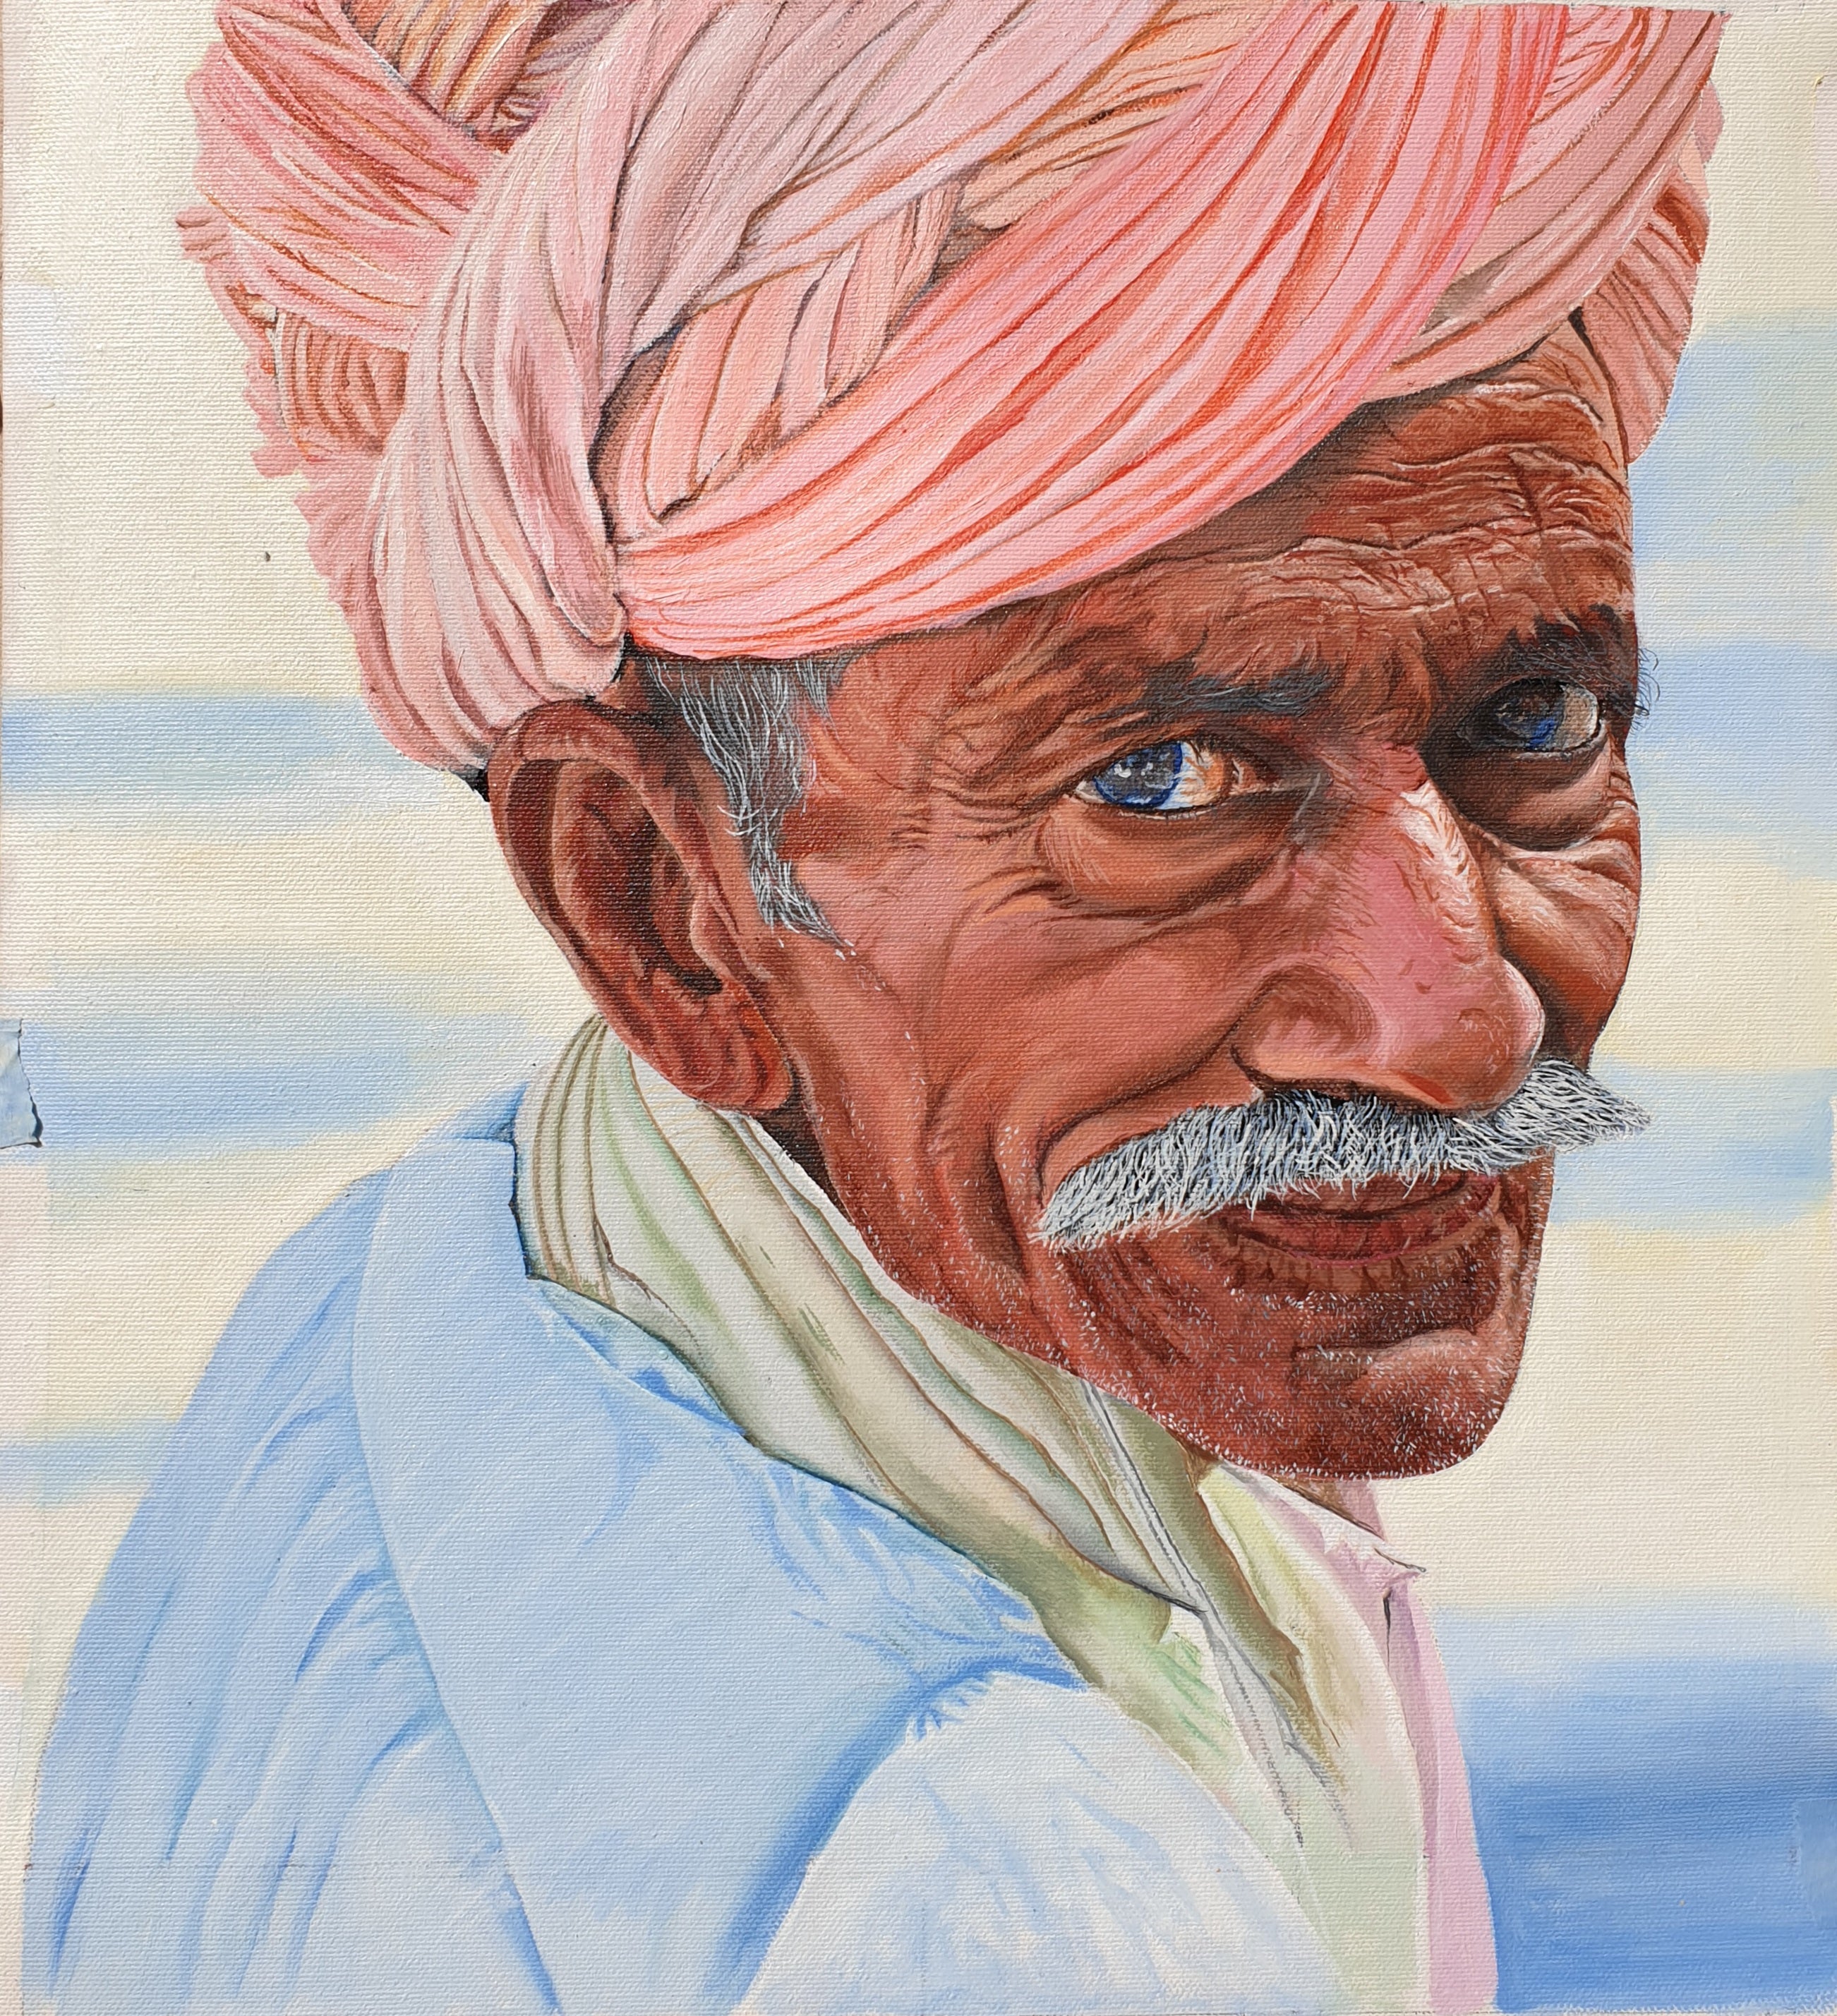 Rajasthani Man Trong Trang Phục Truyền Thống Của Rajasthan Ấn Độ Hình minh  họa Sẵn có - Tải xuống Hình ảnh Ngay bây giờ - iStock